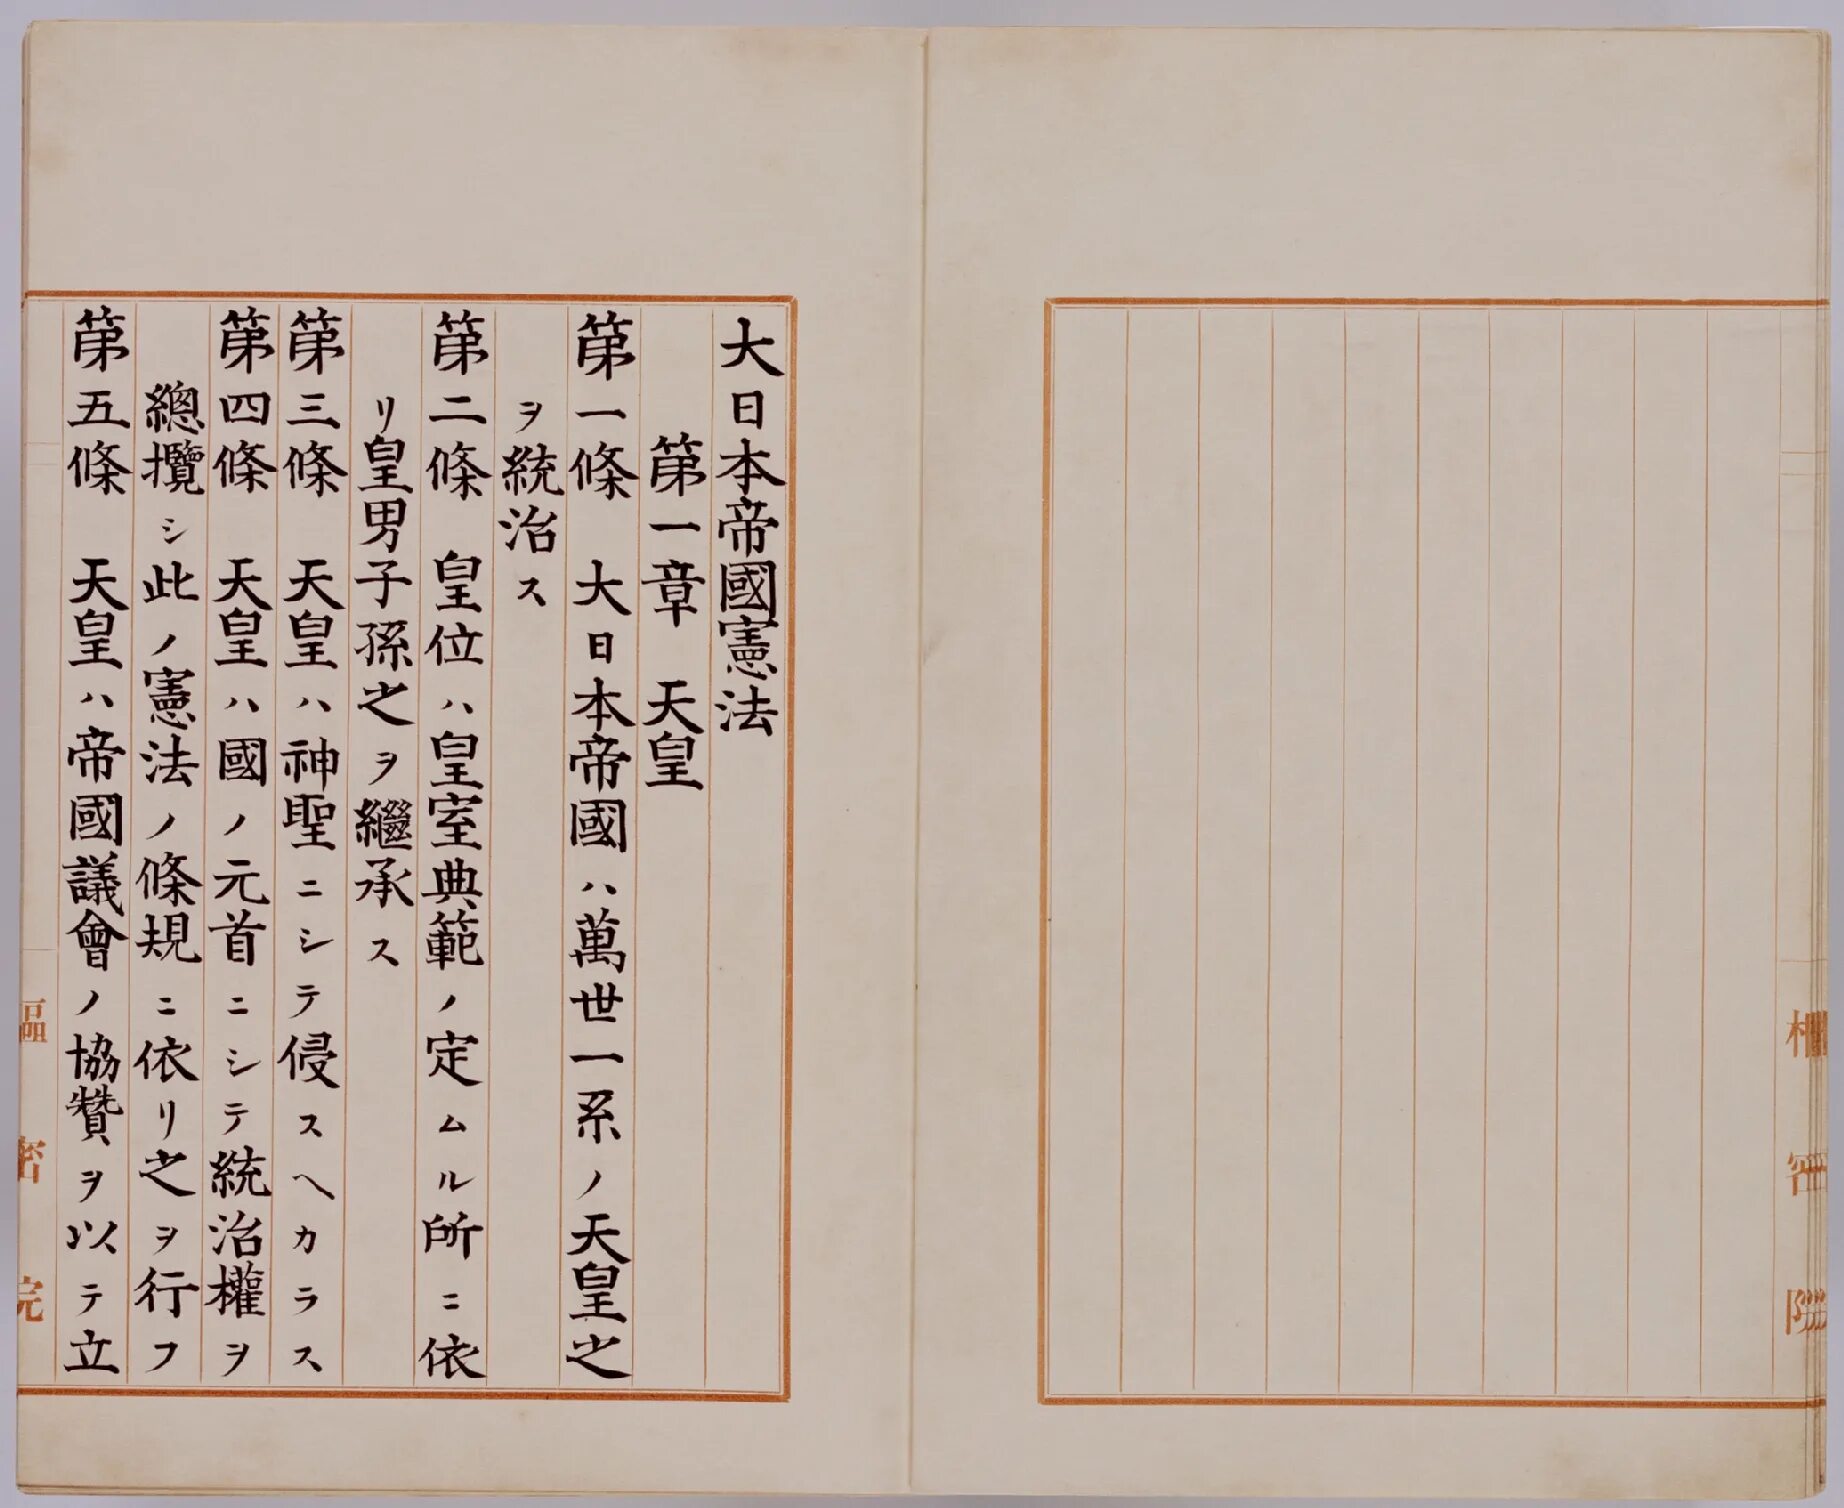 Конституция японской империи 1889. Конституция Японии 1889 года. Конституция Японии 1947. Конституция Мэйдзи 1889. Японская конституция 1889